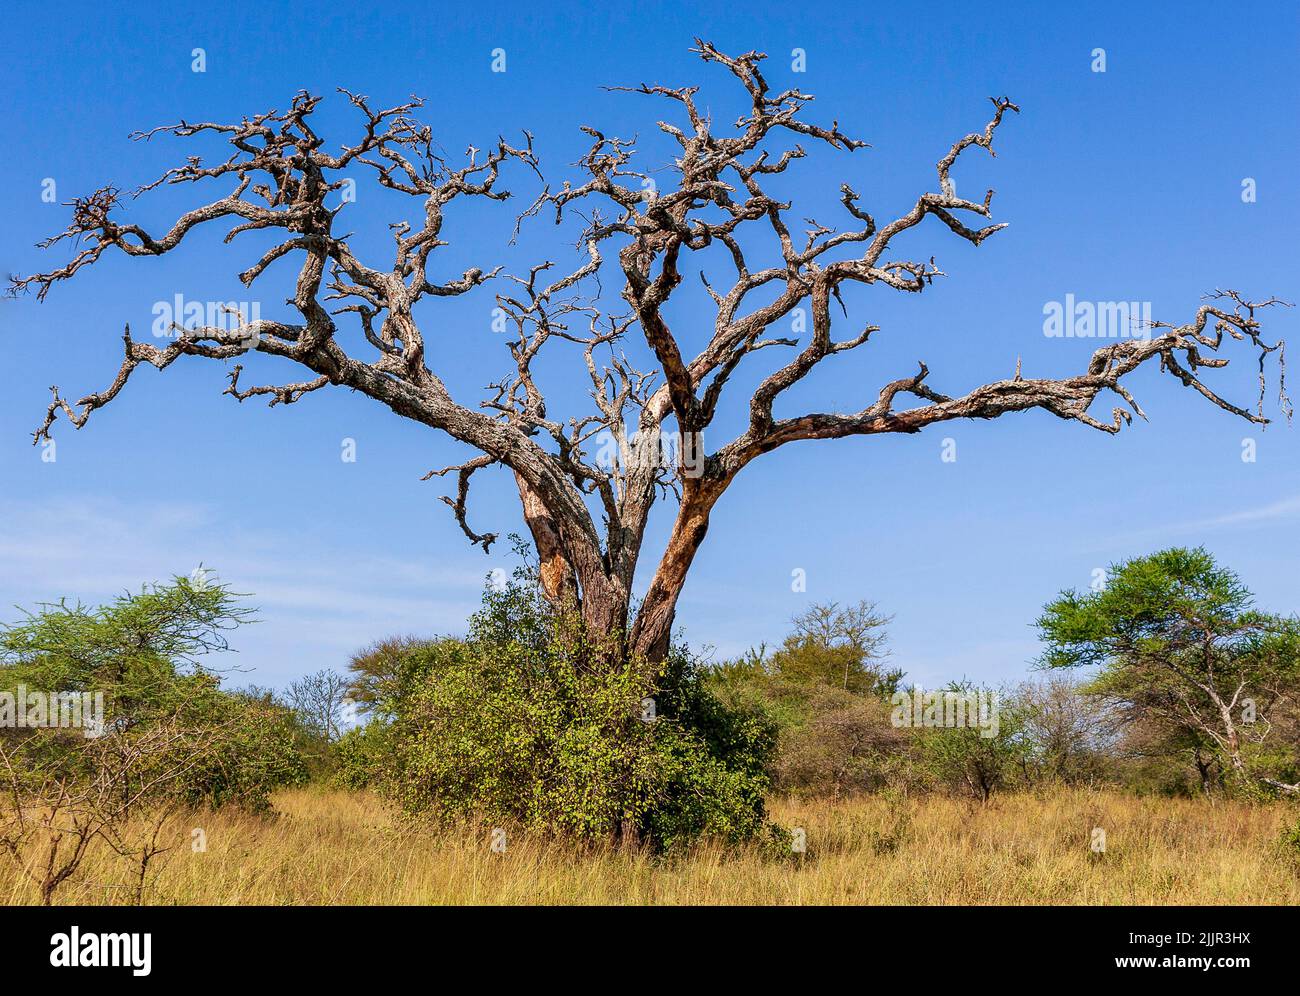 Dead Acacia tree in the Serengeti, Tanzania Stock Photo